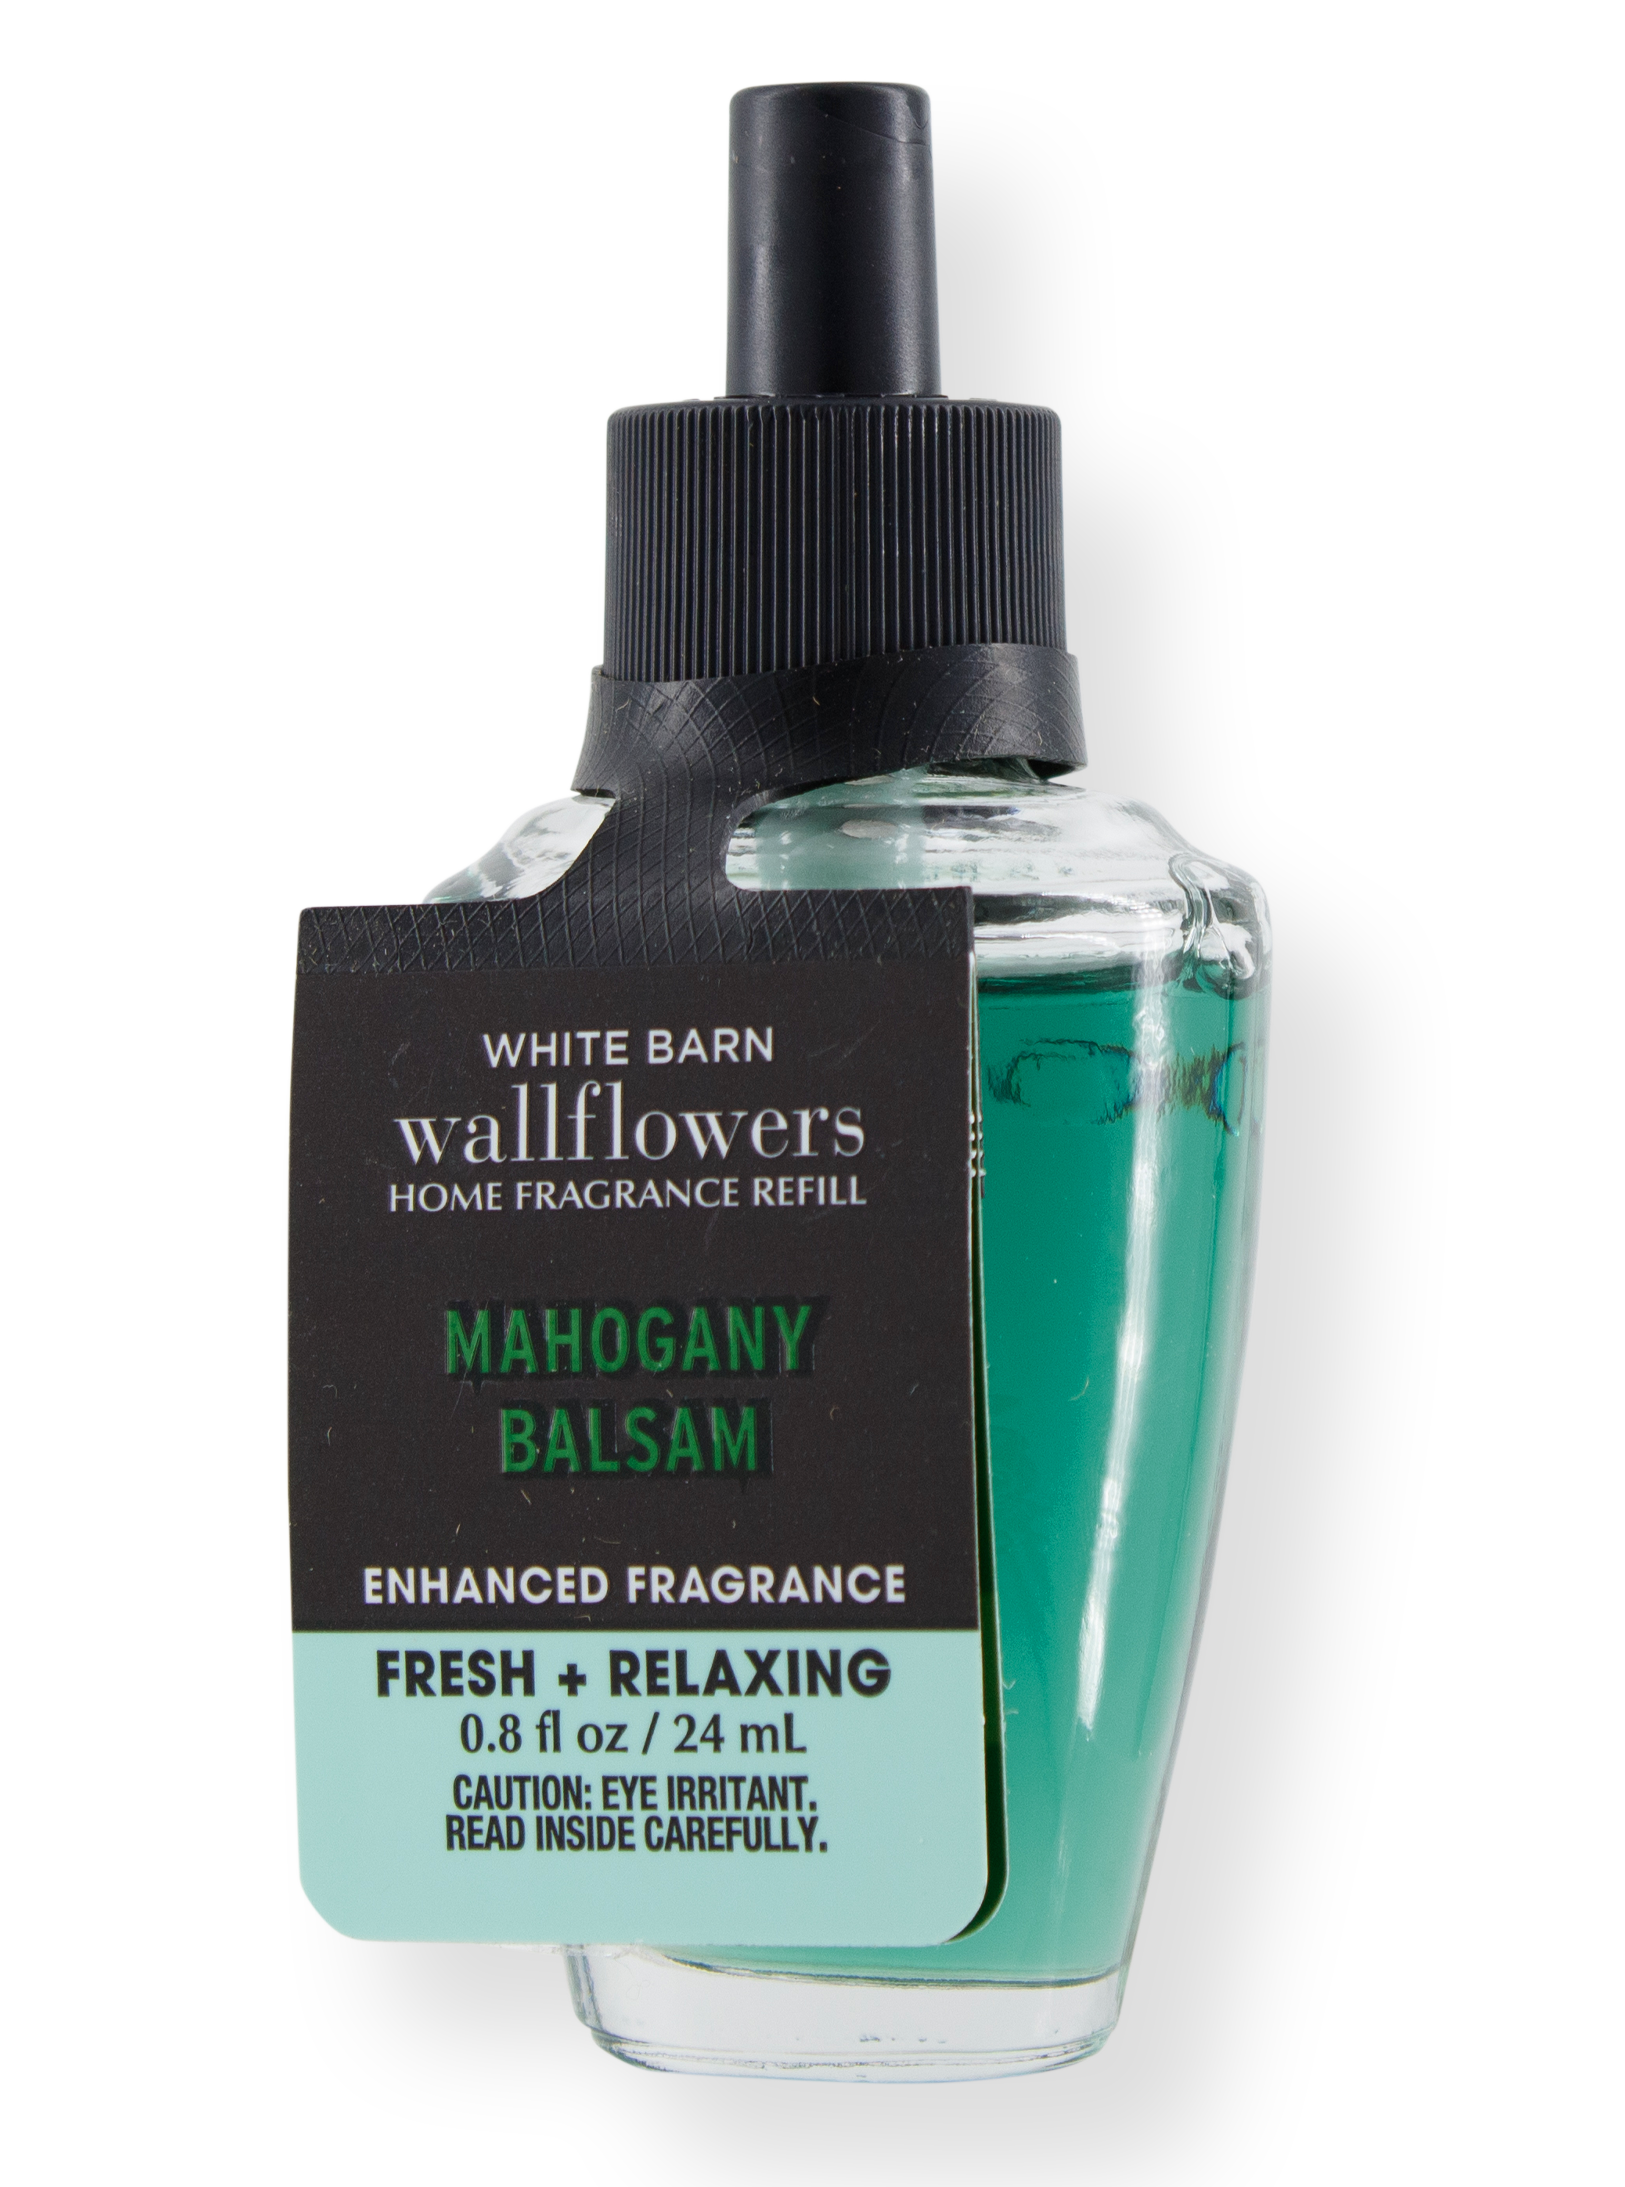 Wallflower Refill - Mahogany Balsam - 24ml